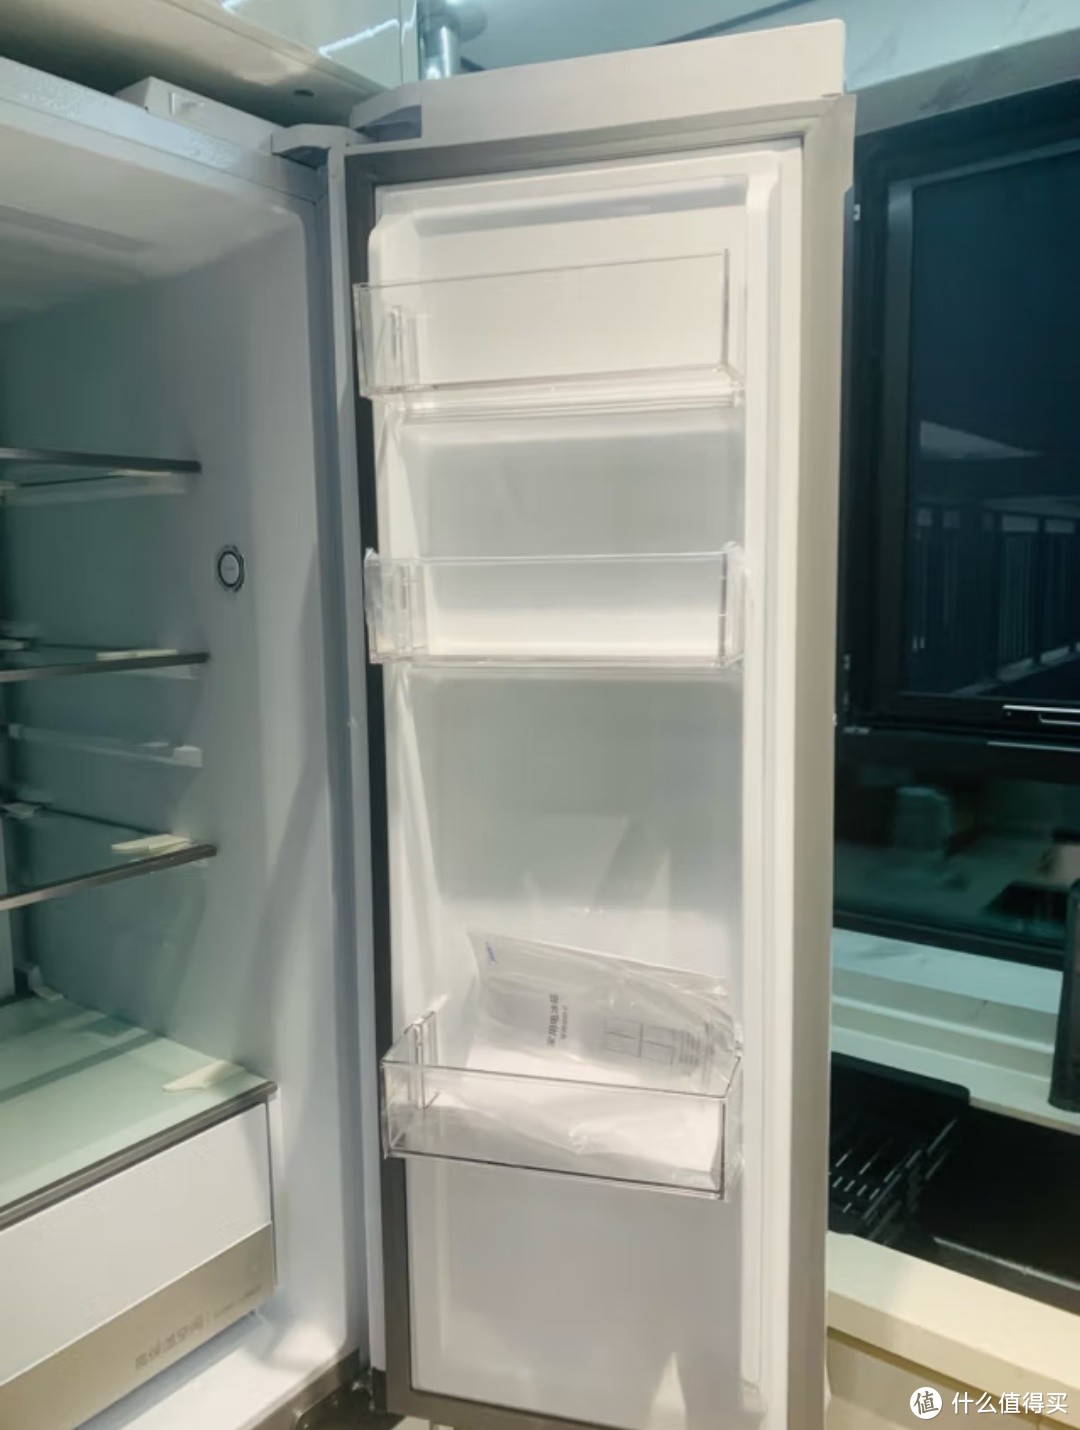 分享几款质量好的冰箱